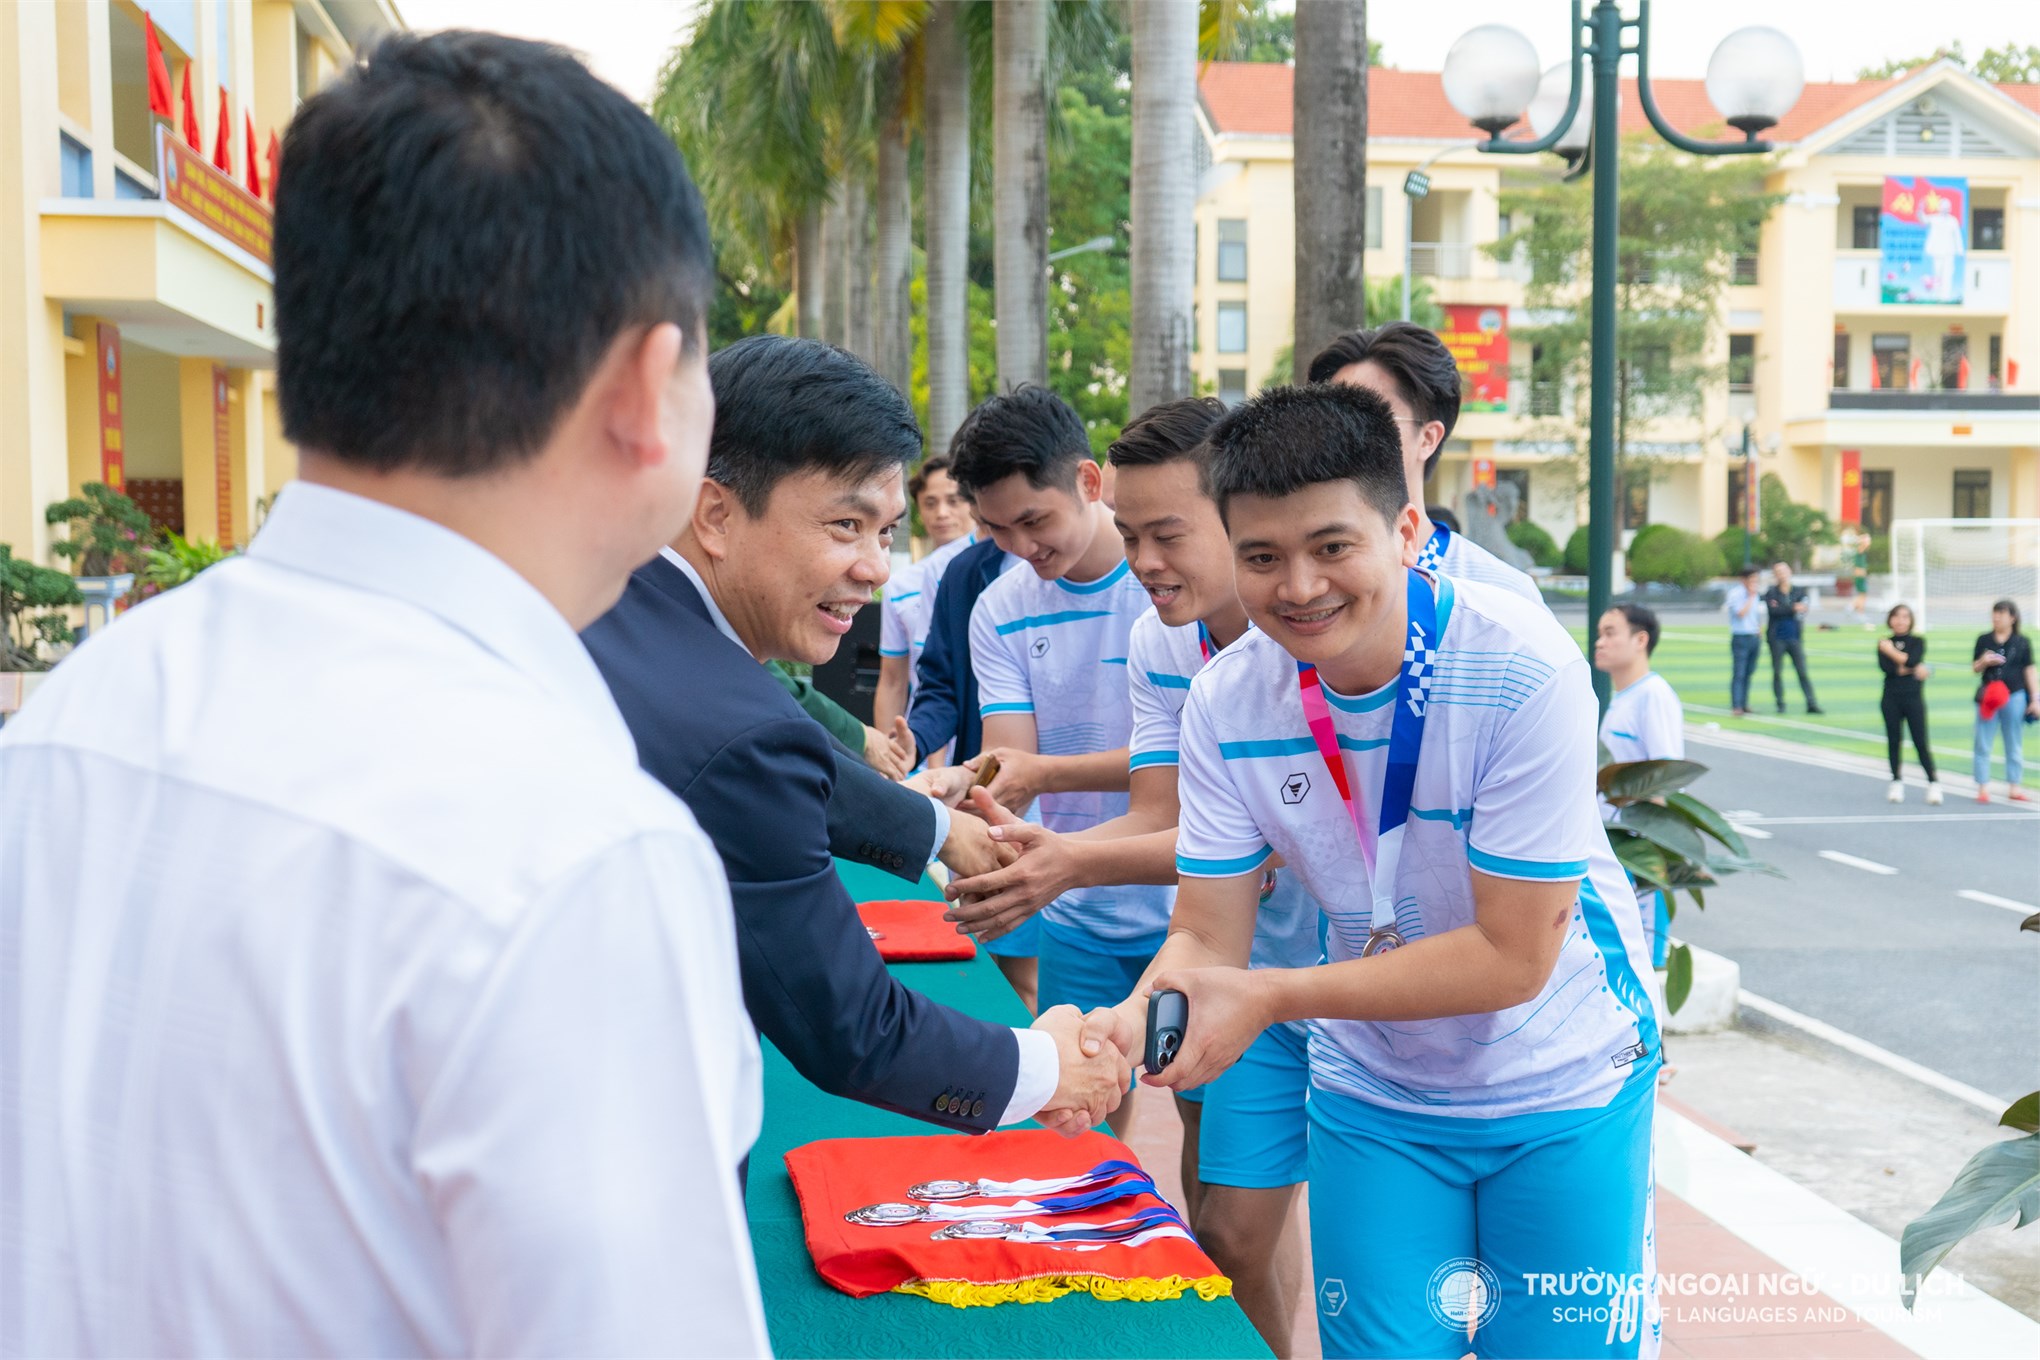 Liên quân Trường Ngoại ngữ Du lịch giành giải Nhì môn Bóng đá Nam tại Hội thao Thể dục Thể thao viên chức, người lao động HaUI năm 2024